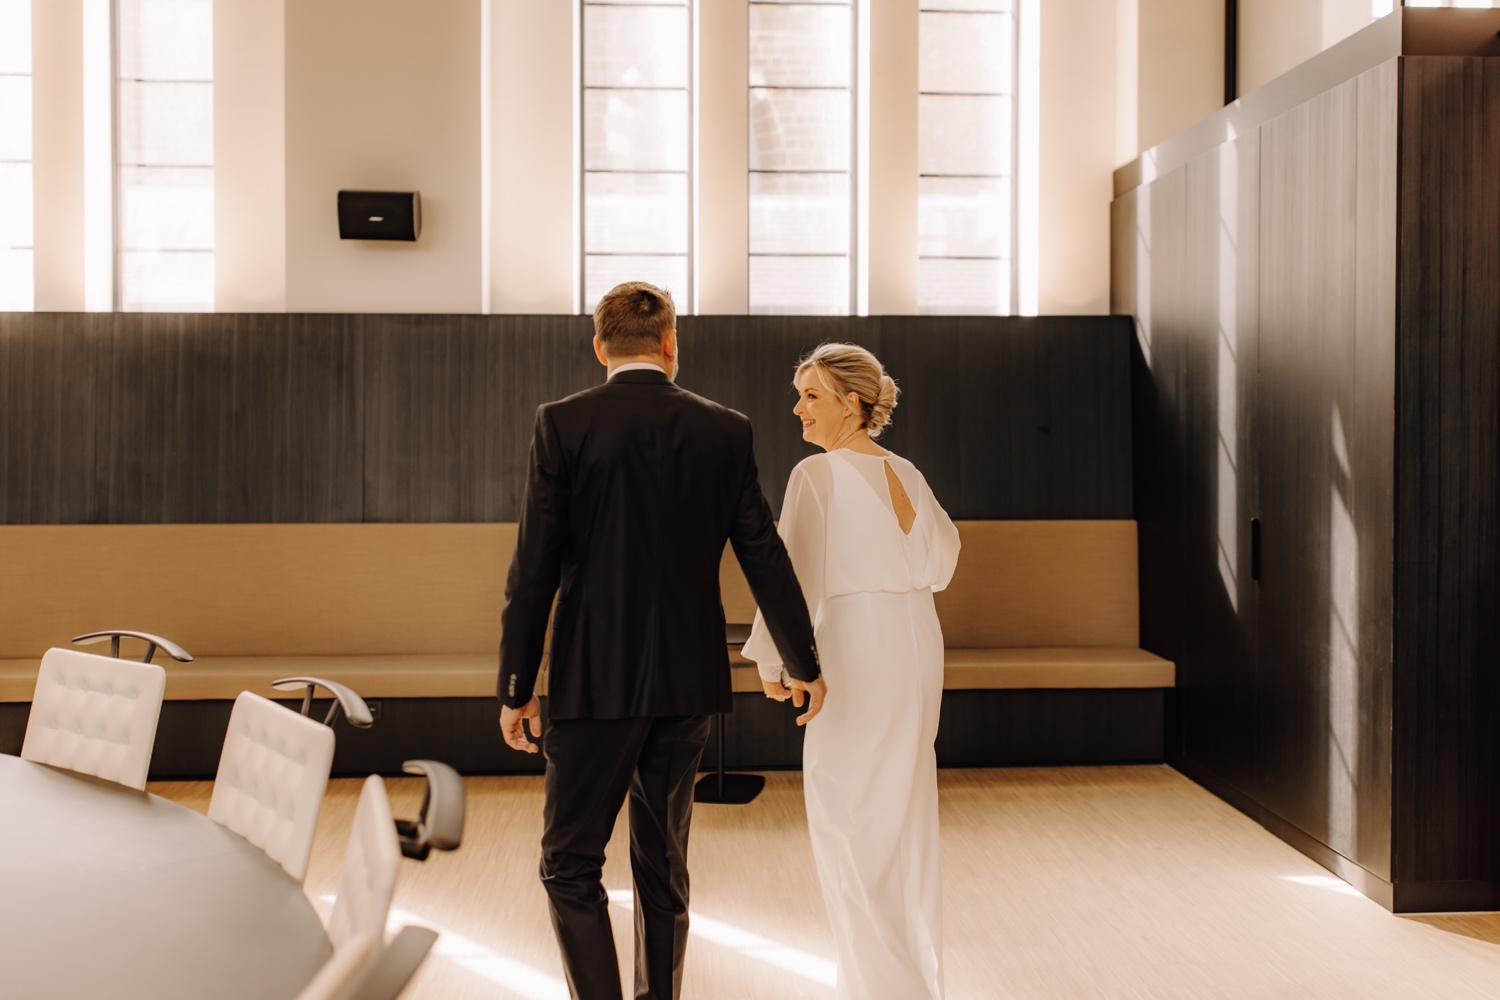 Huwelijksfotograaf Limburg - bruidspaar lacht naar elkaar tijdens intrede gemeentehuis Beringen